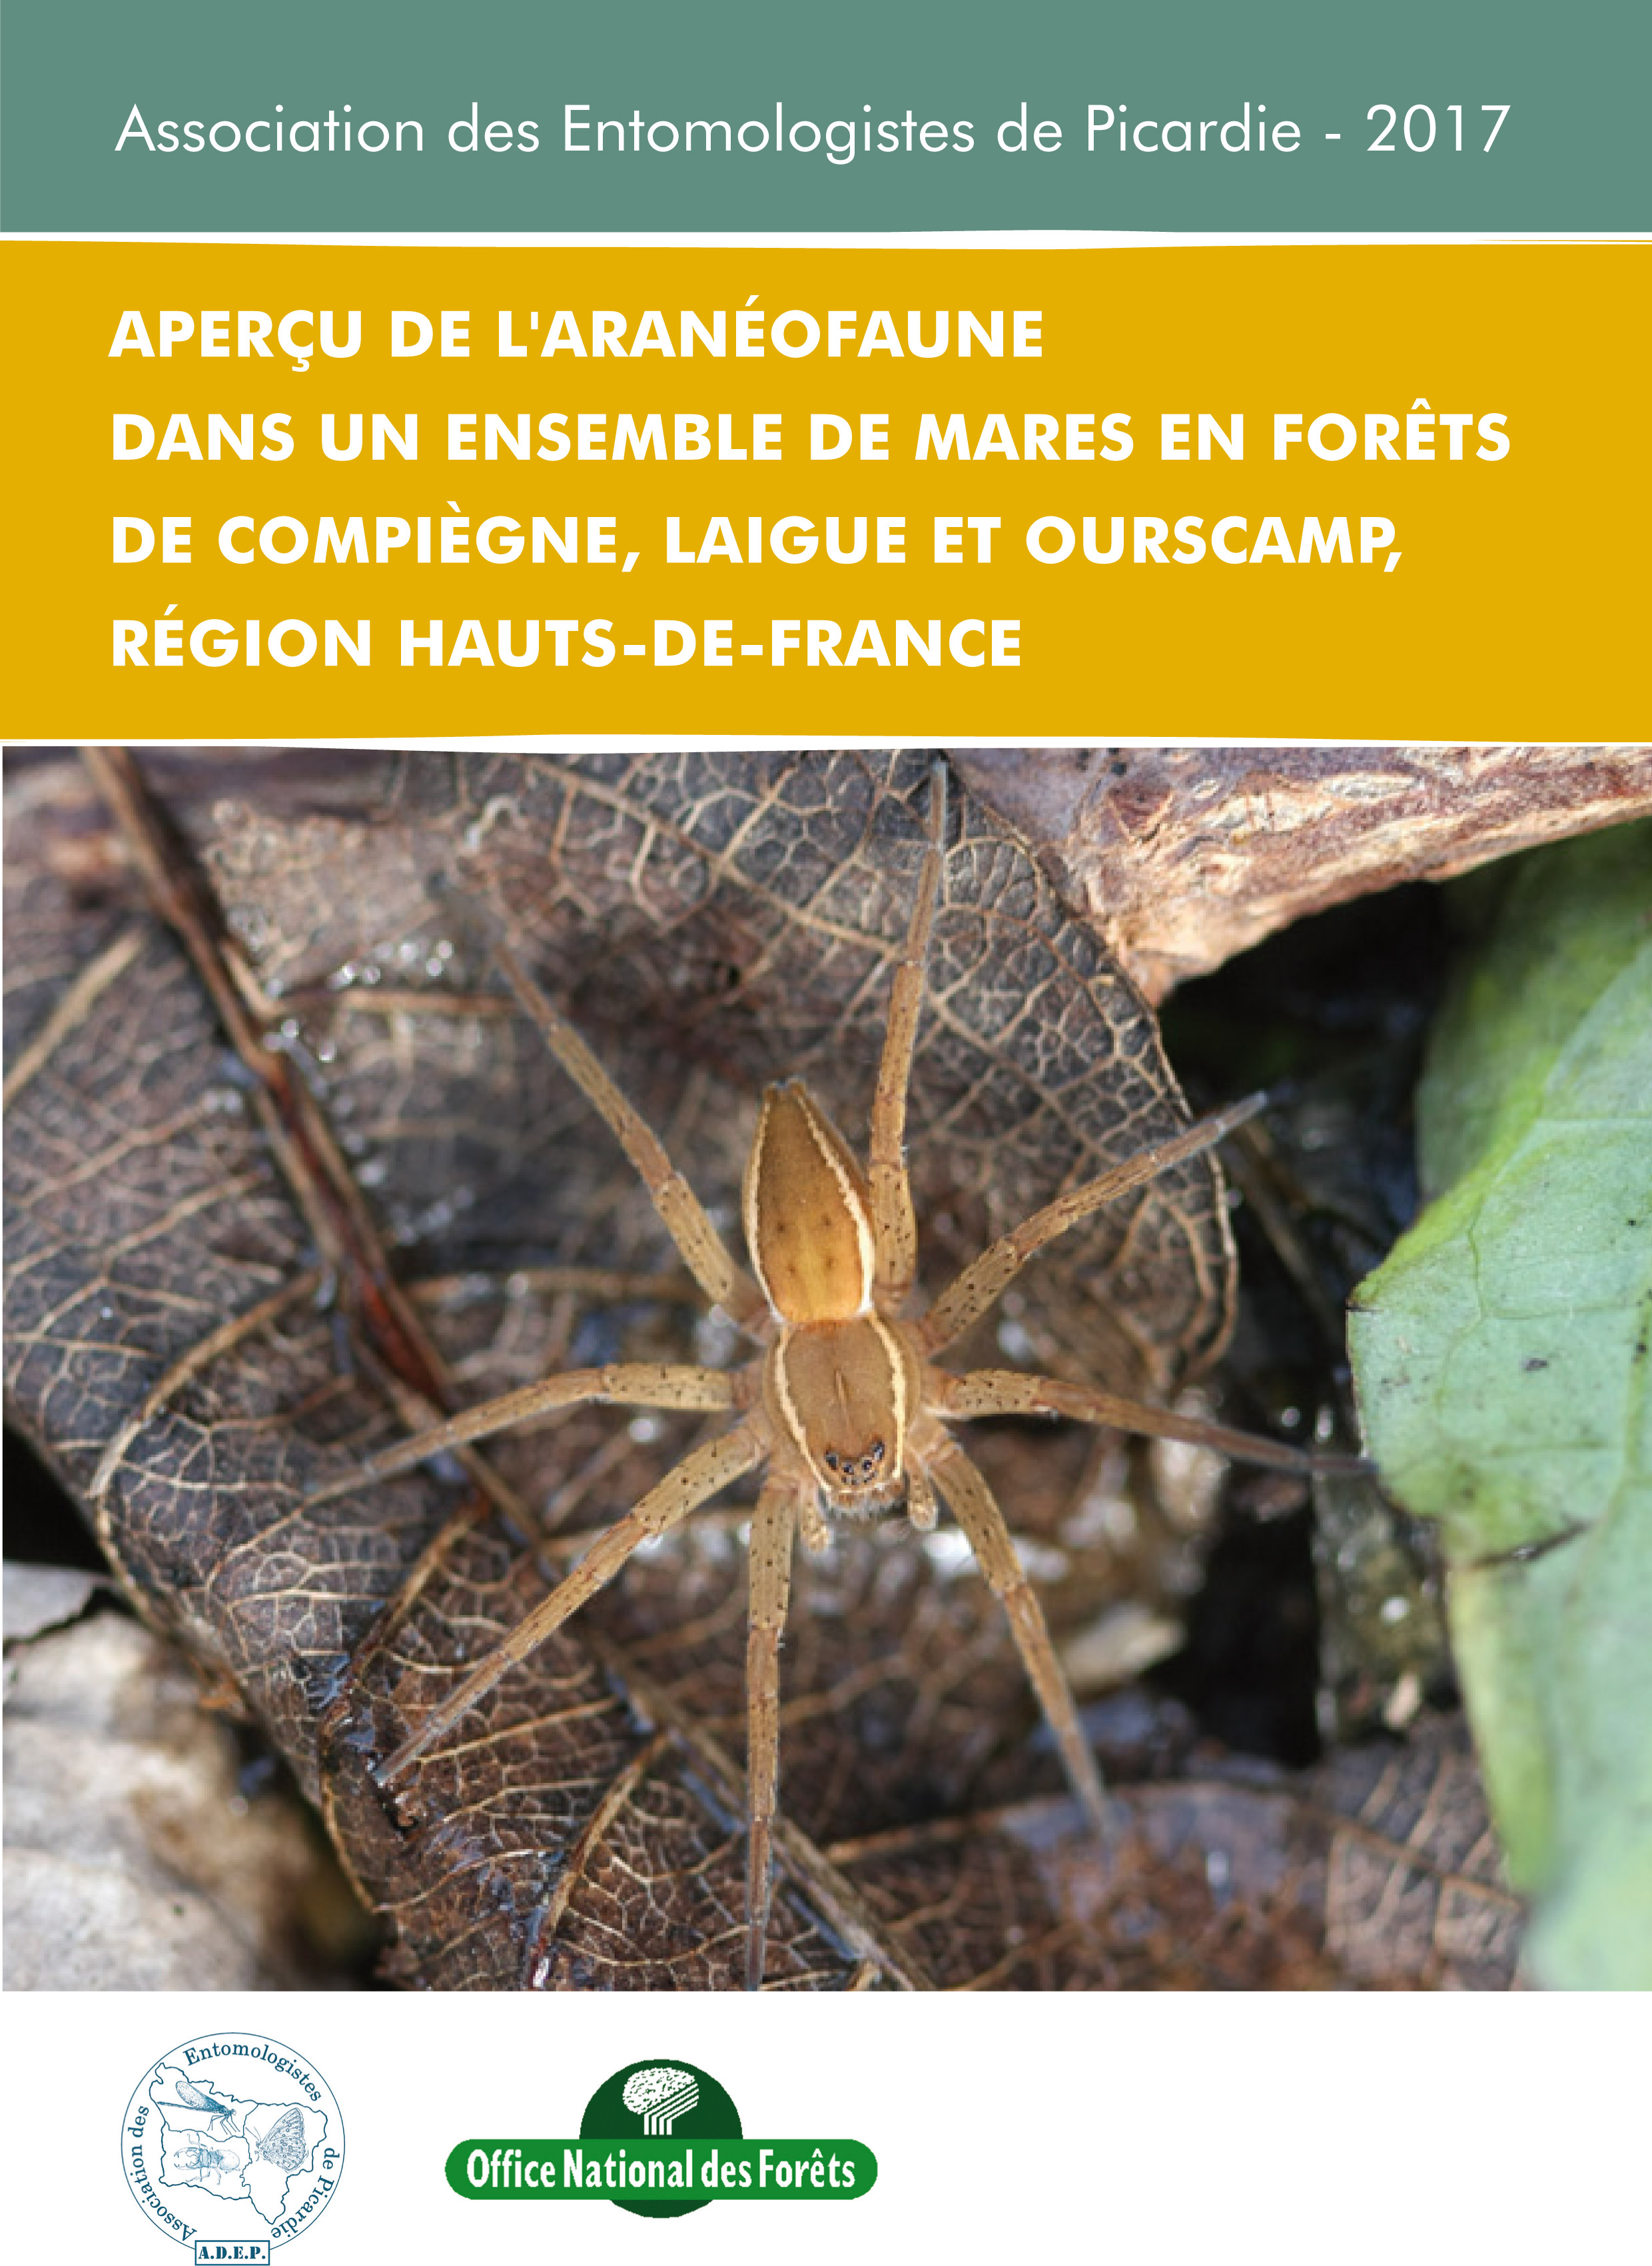 Rapport d’étude : Araignées des mares forestières de Compiègne, Laigue et Ourscamp 2017